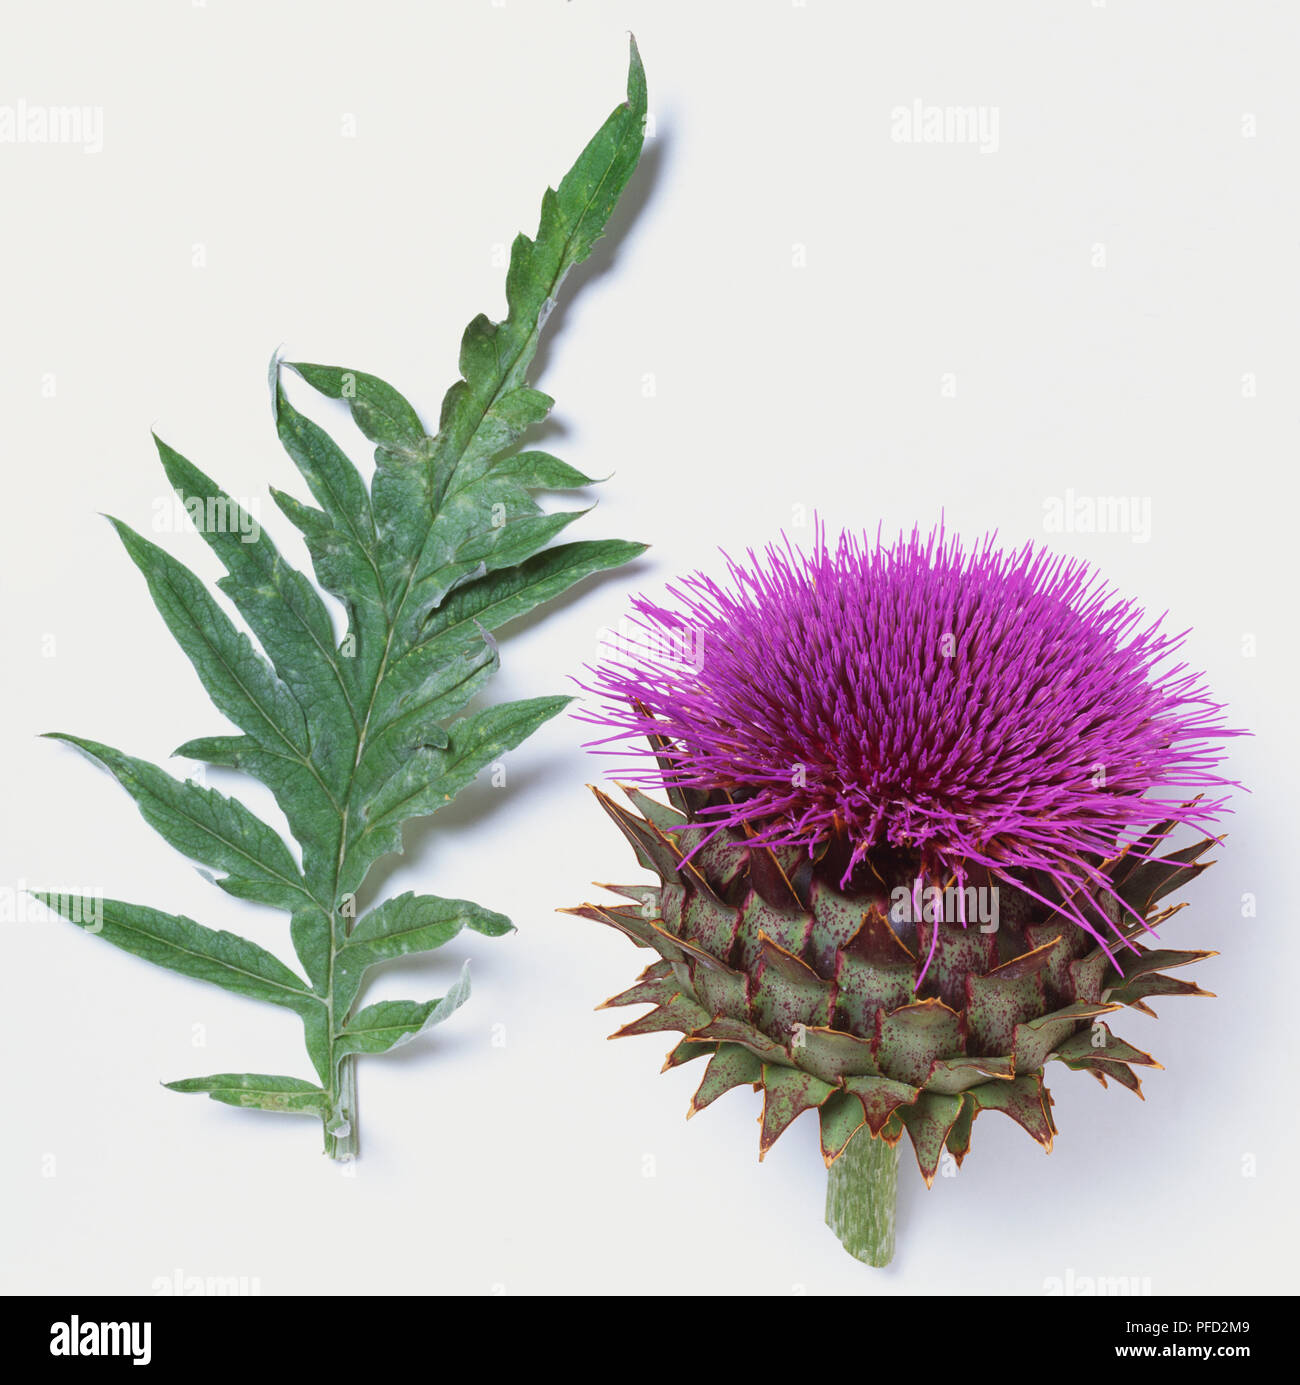 Blume und Blatt von Artischocke, Cynara scolymus. Stockfoto